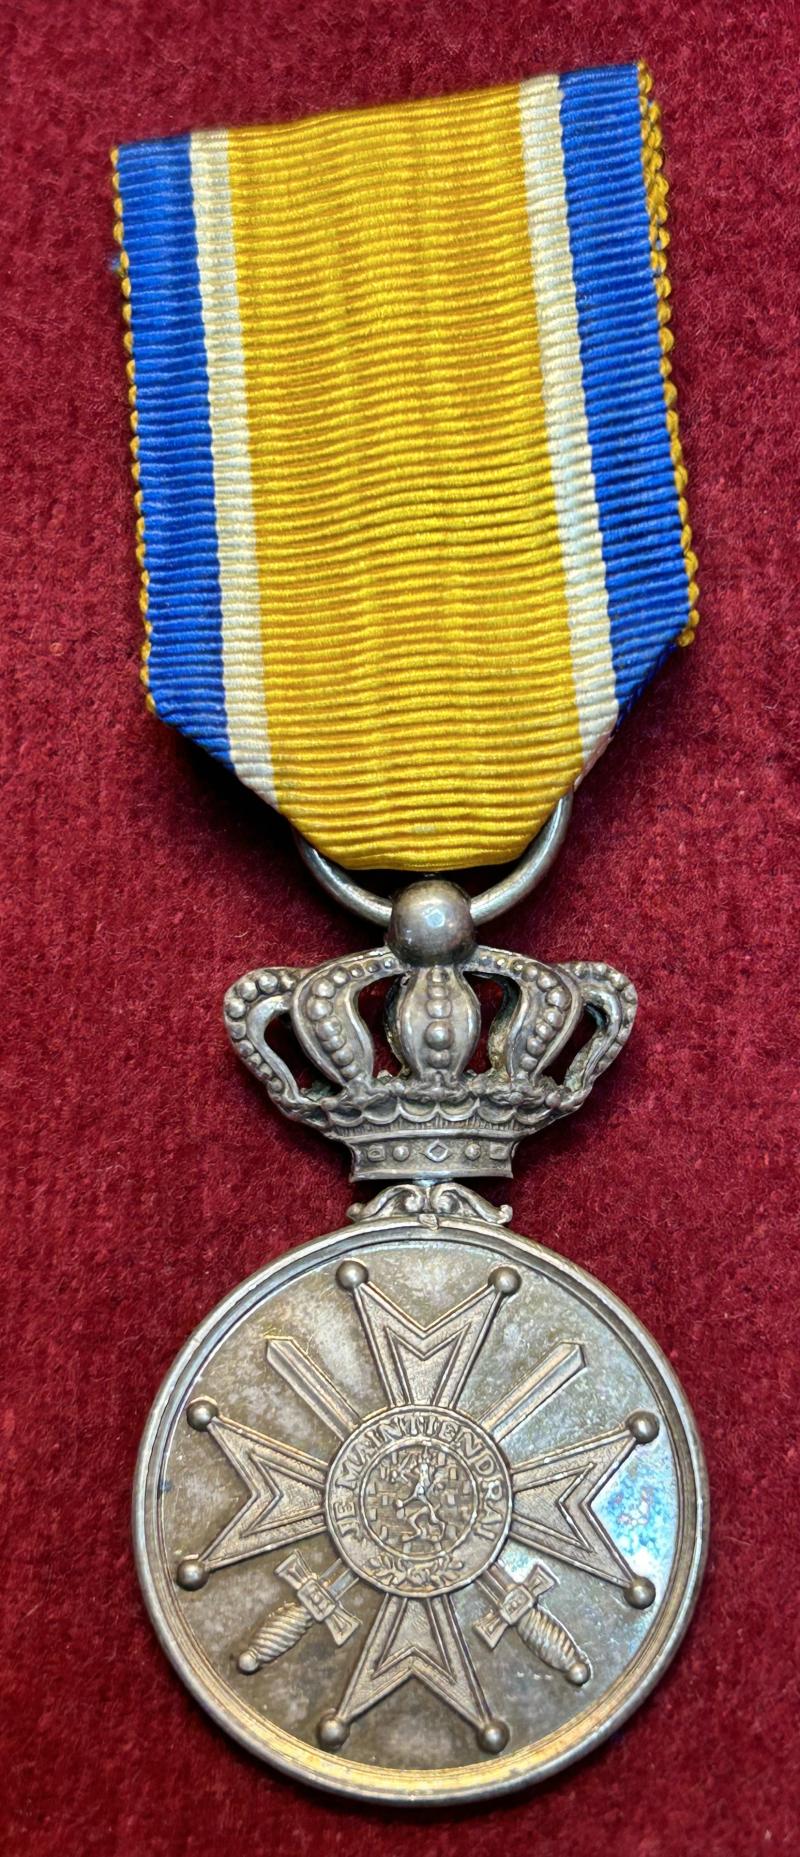 Nederland Zilveren Eremedaille met zwaarden in de Orde van Oranje-Nassau